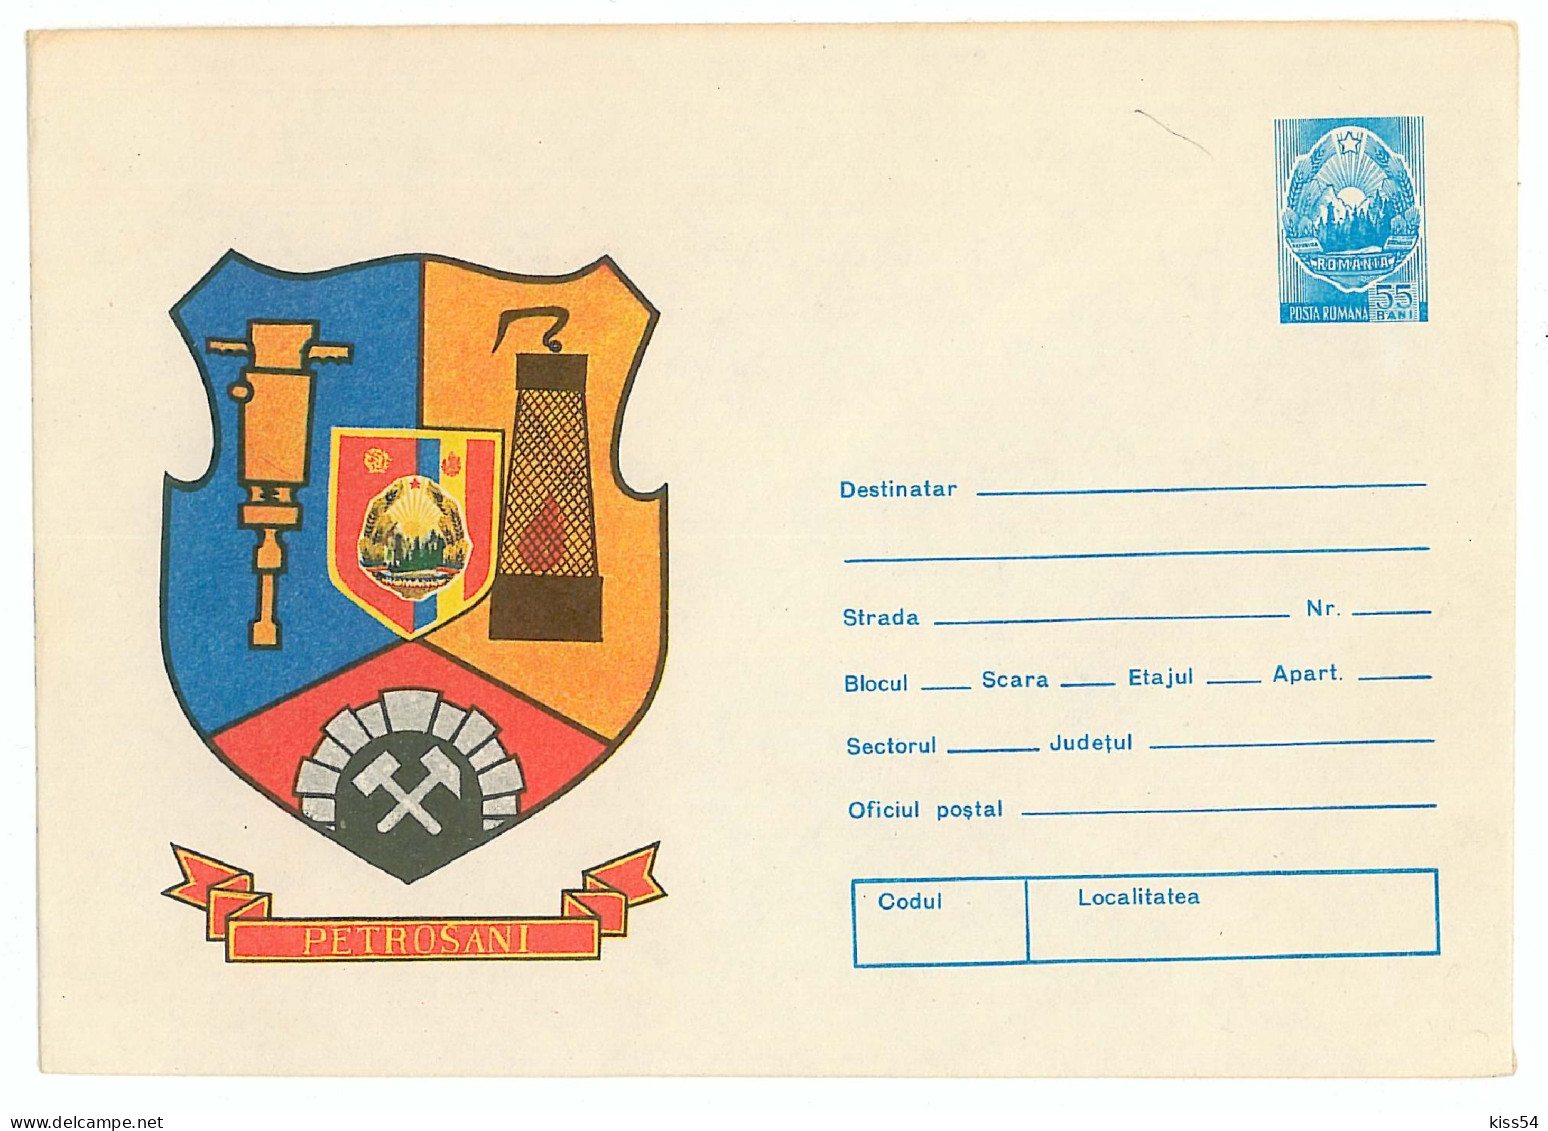 IP 76 - 169 MINE, Heraldry PETROSANI - Stationery - Unused - 1976 - Postal Stationery